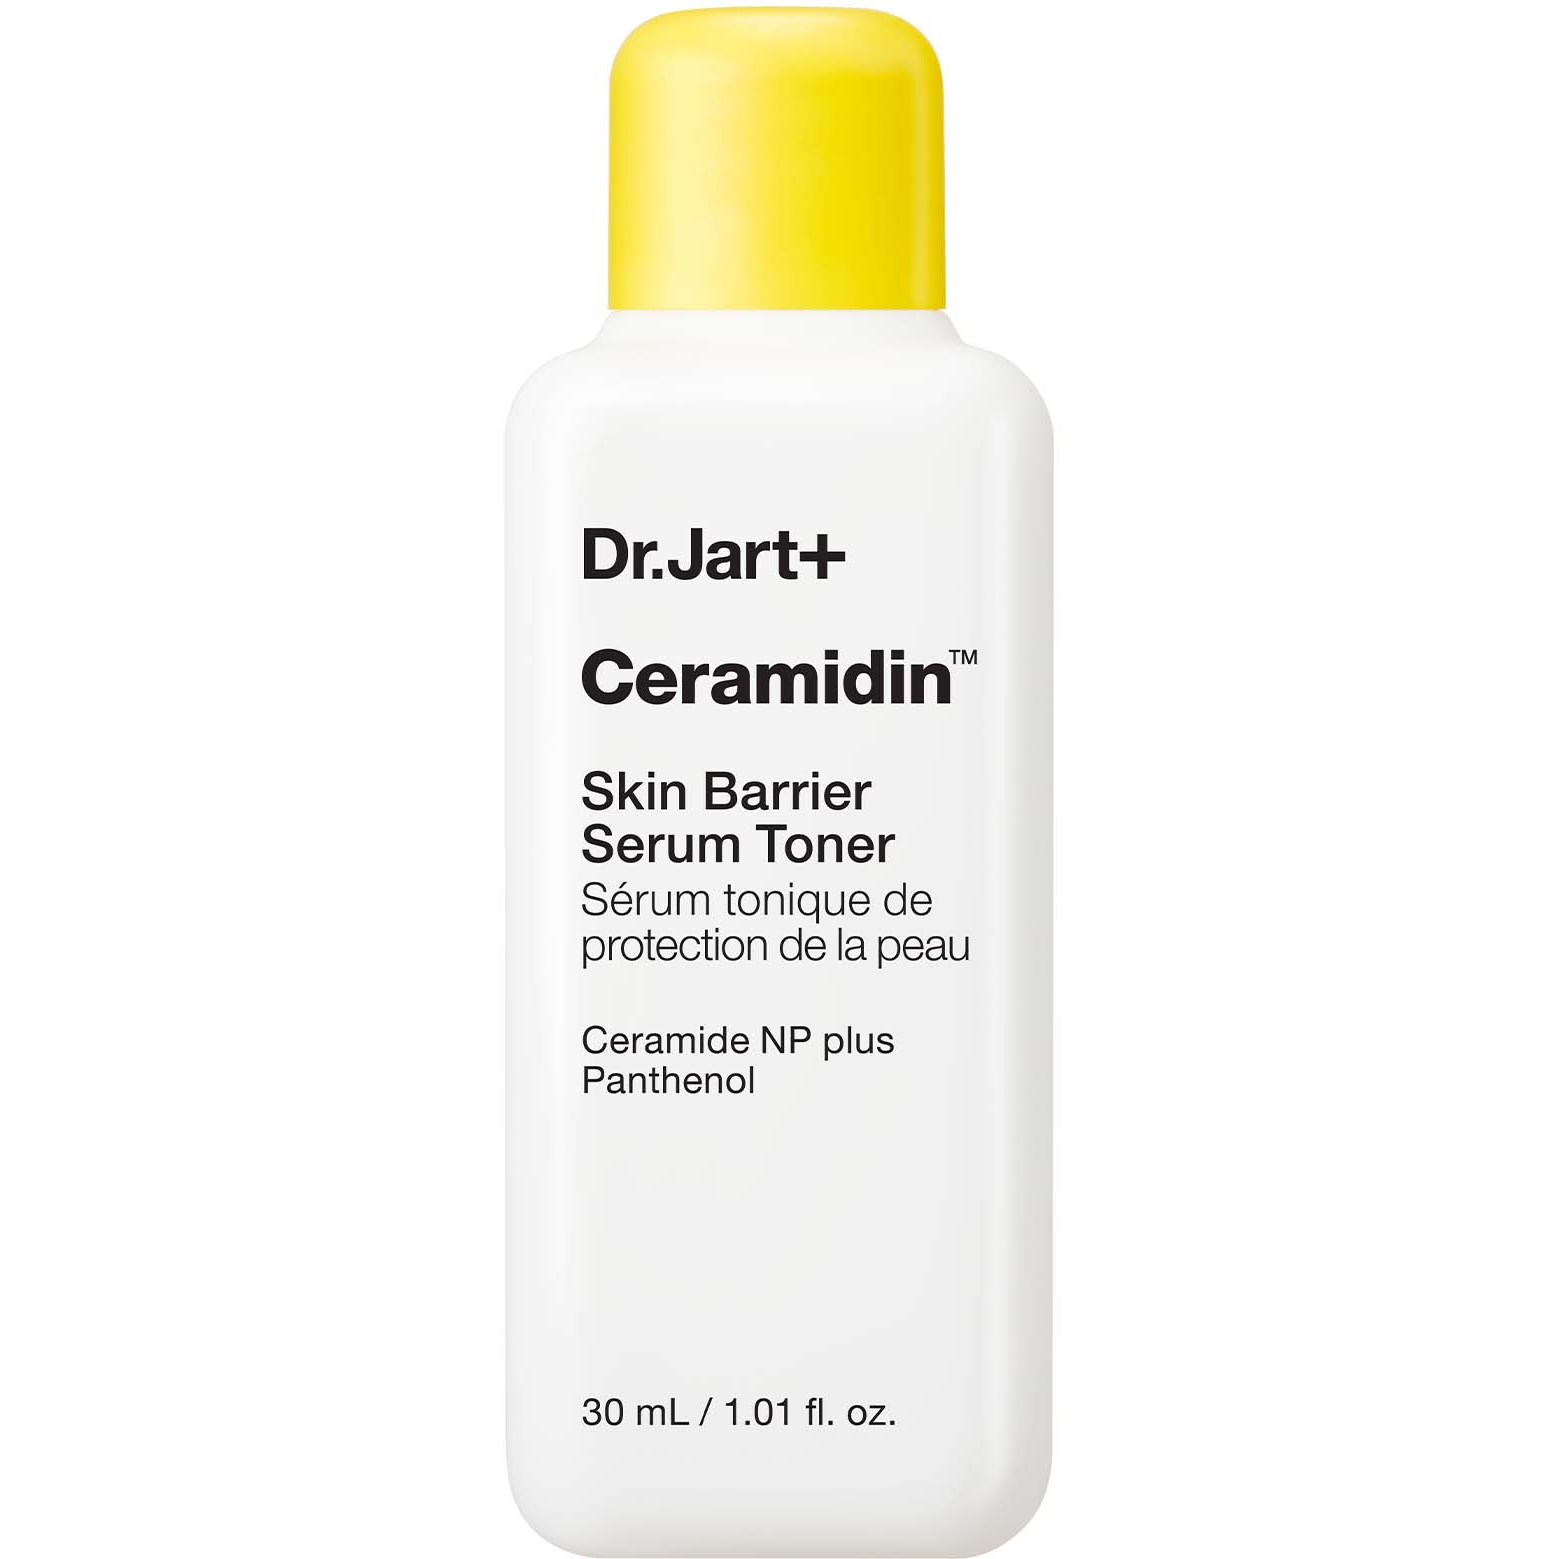 Bilde av Dr.jart+ Ceramidin Skin Barrier Serum Toner 30 Ml